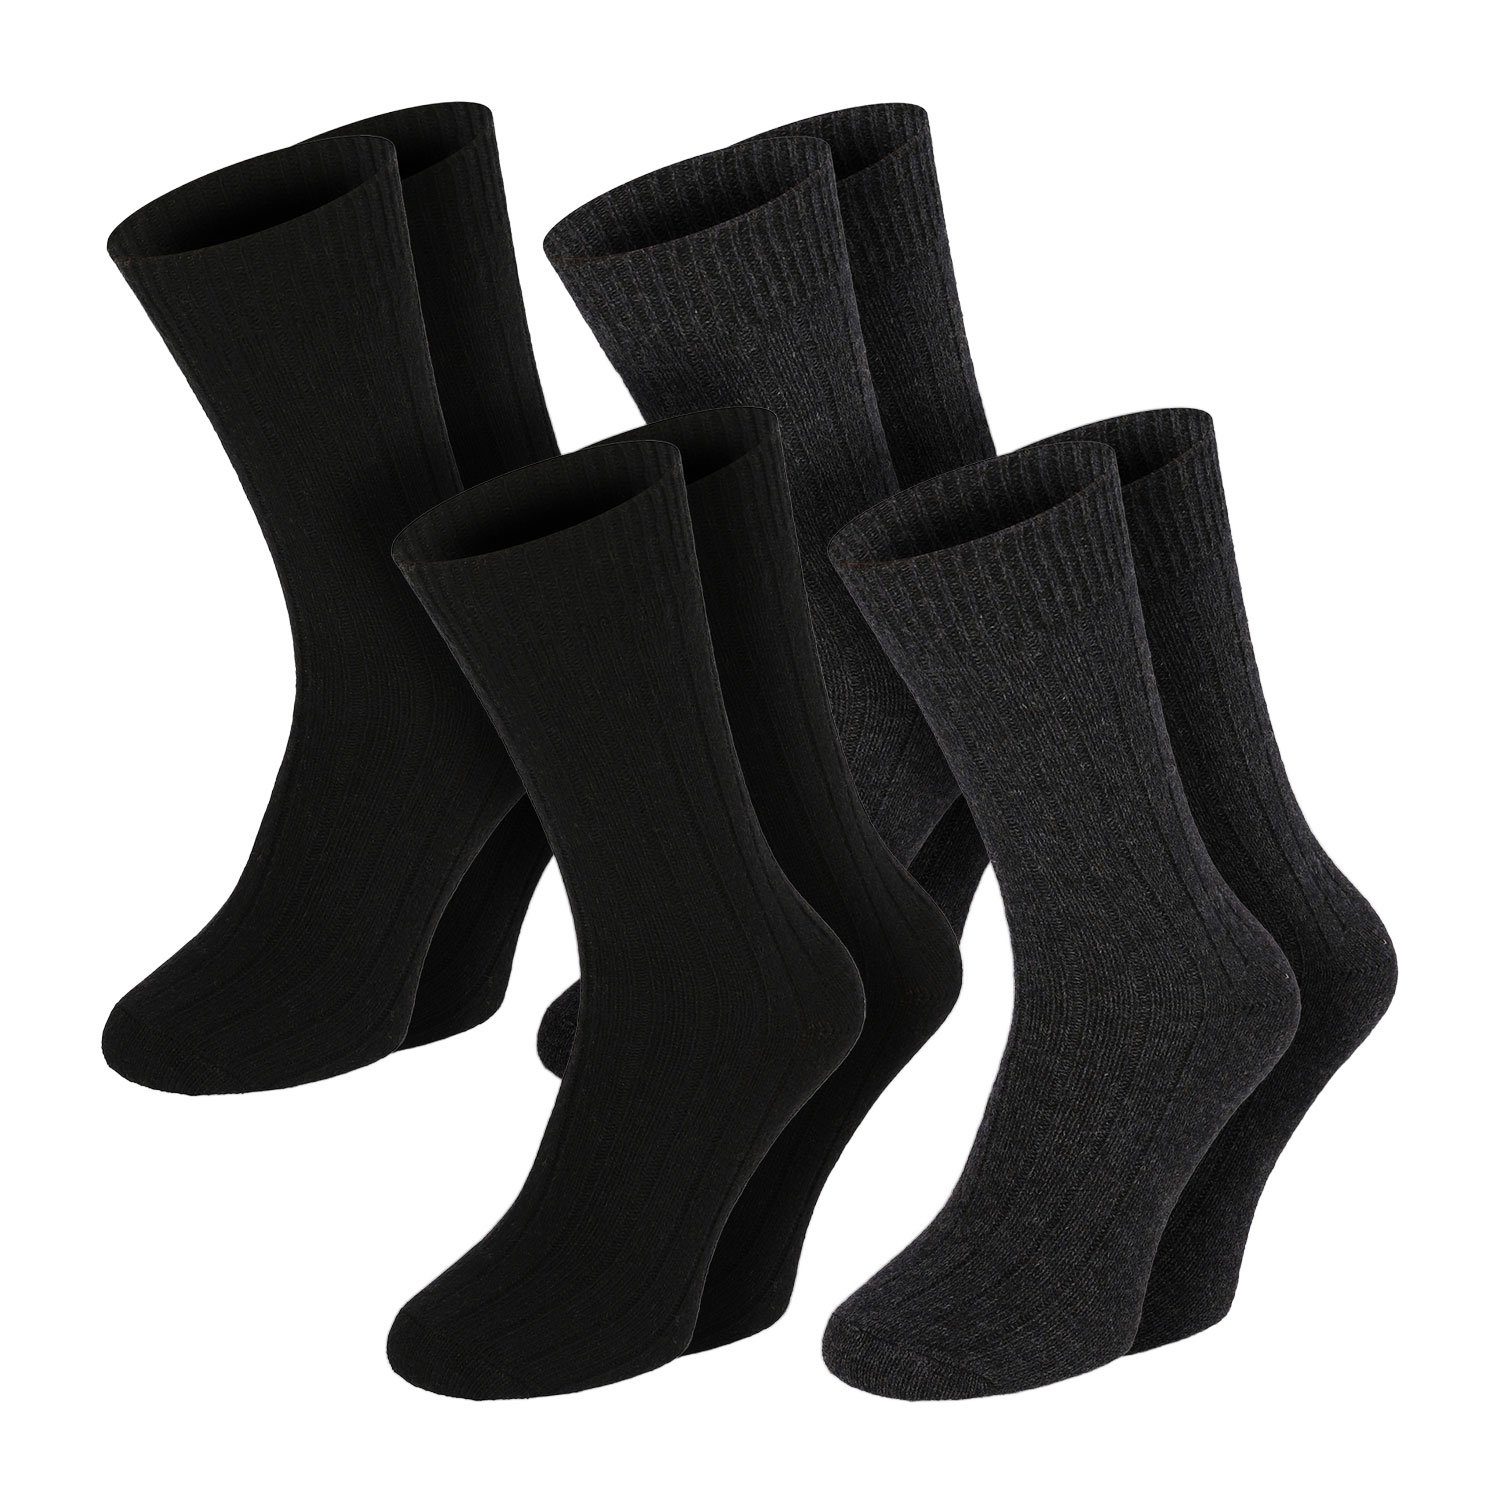 Chili Lifestyle Strümpfe Socken Winter Alpaka Wolle Damen Herren Extra Warm Super Soft 4 Paar | Strümpfe